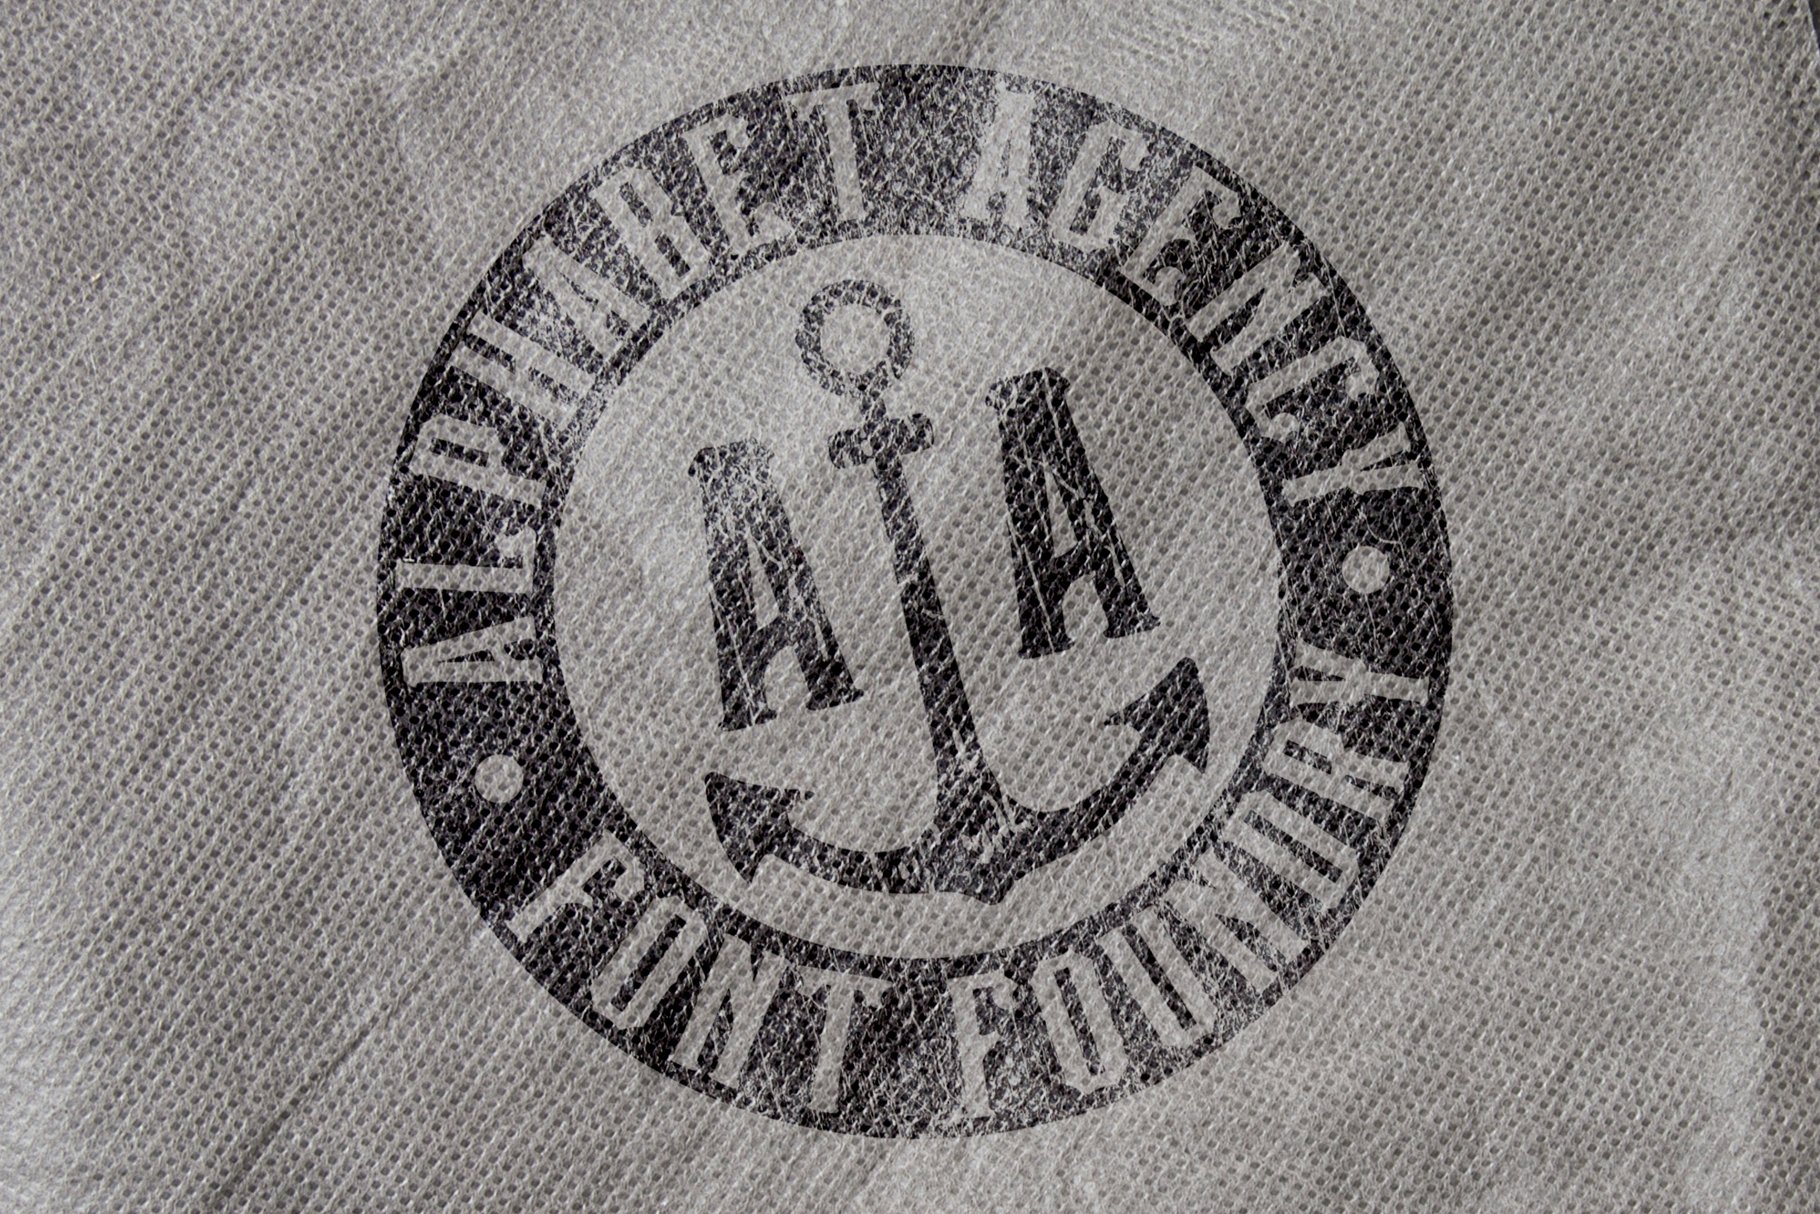 captain tall shipwreck alphabet agency potato sack 1820x1214 840